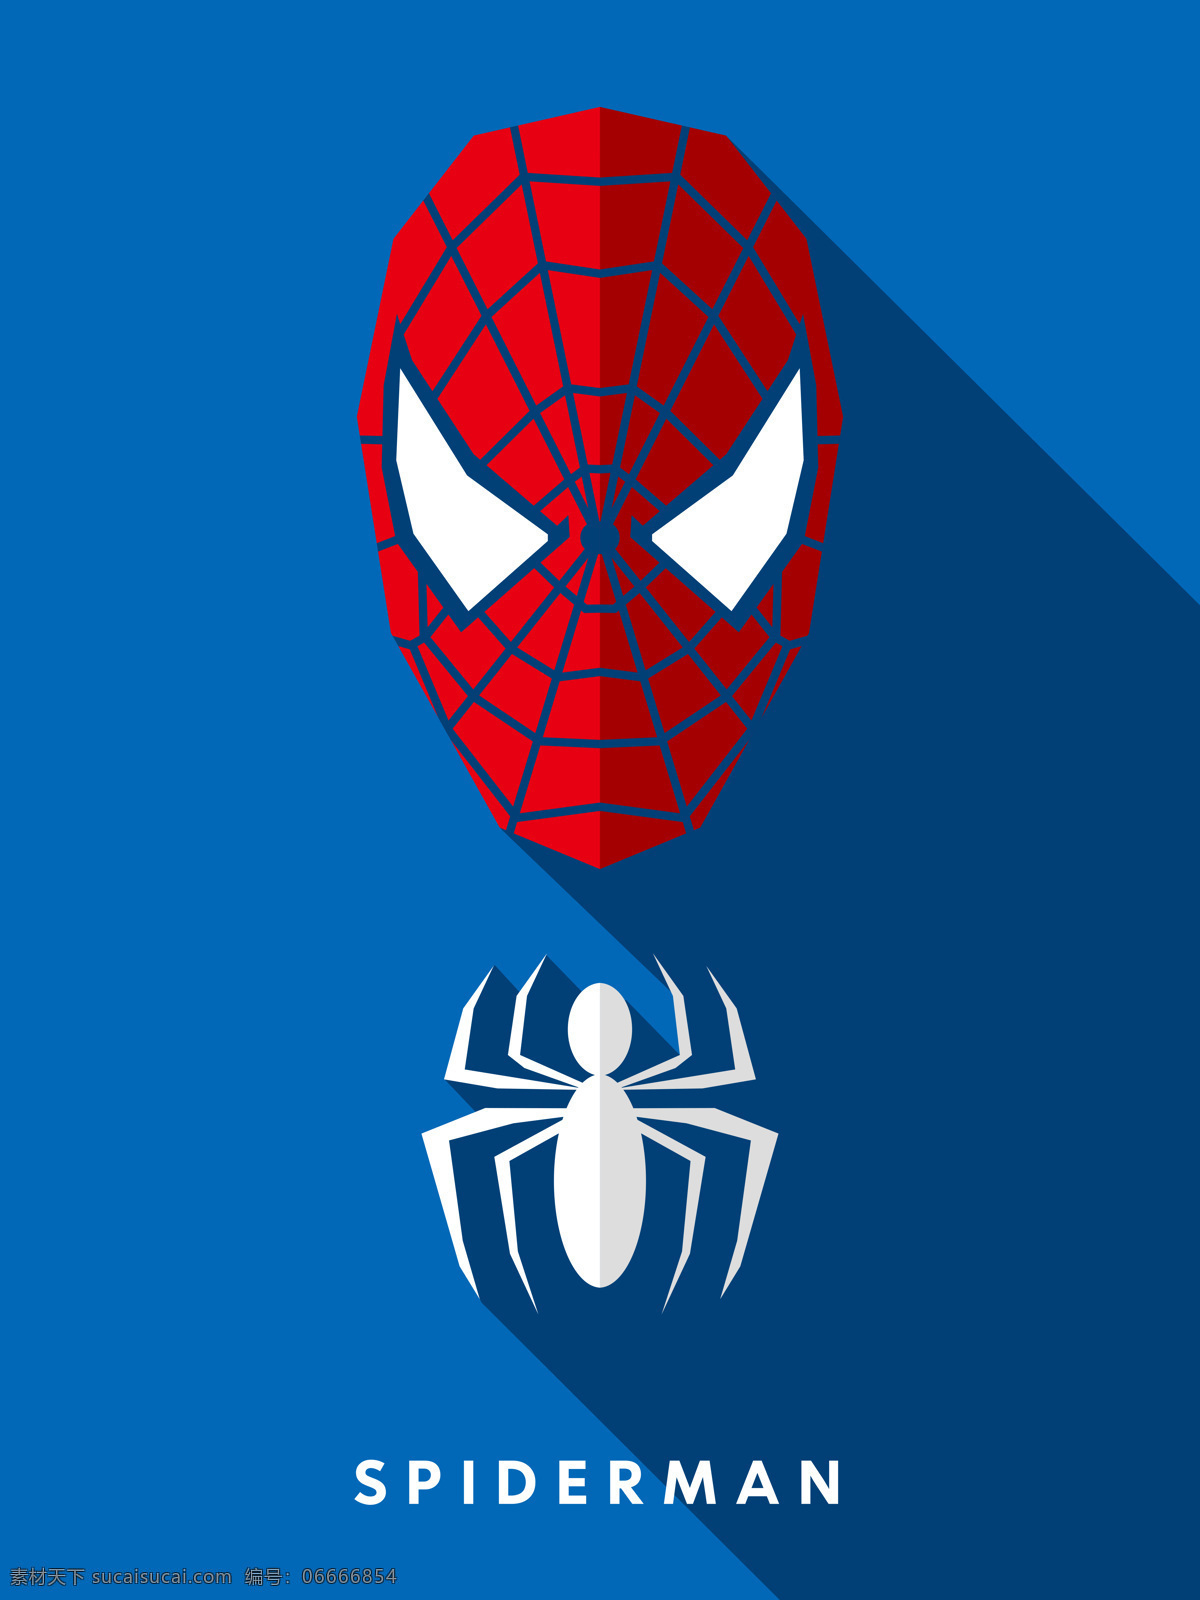 蜘蛛侠 spiderman 超级英雄 漫画英雄 装饰画 高清素材 文化艺术 影视娱乐